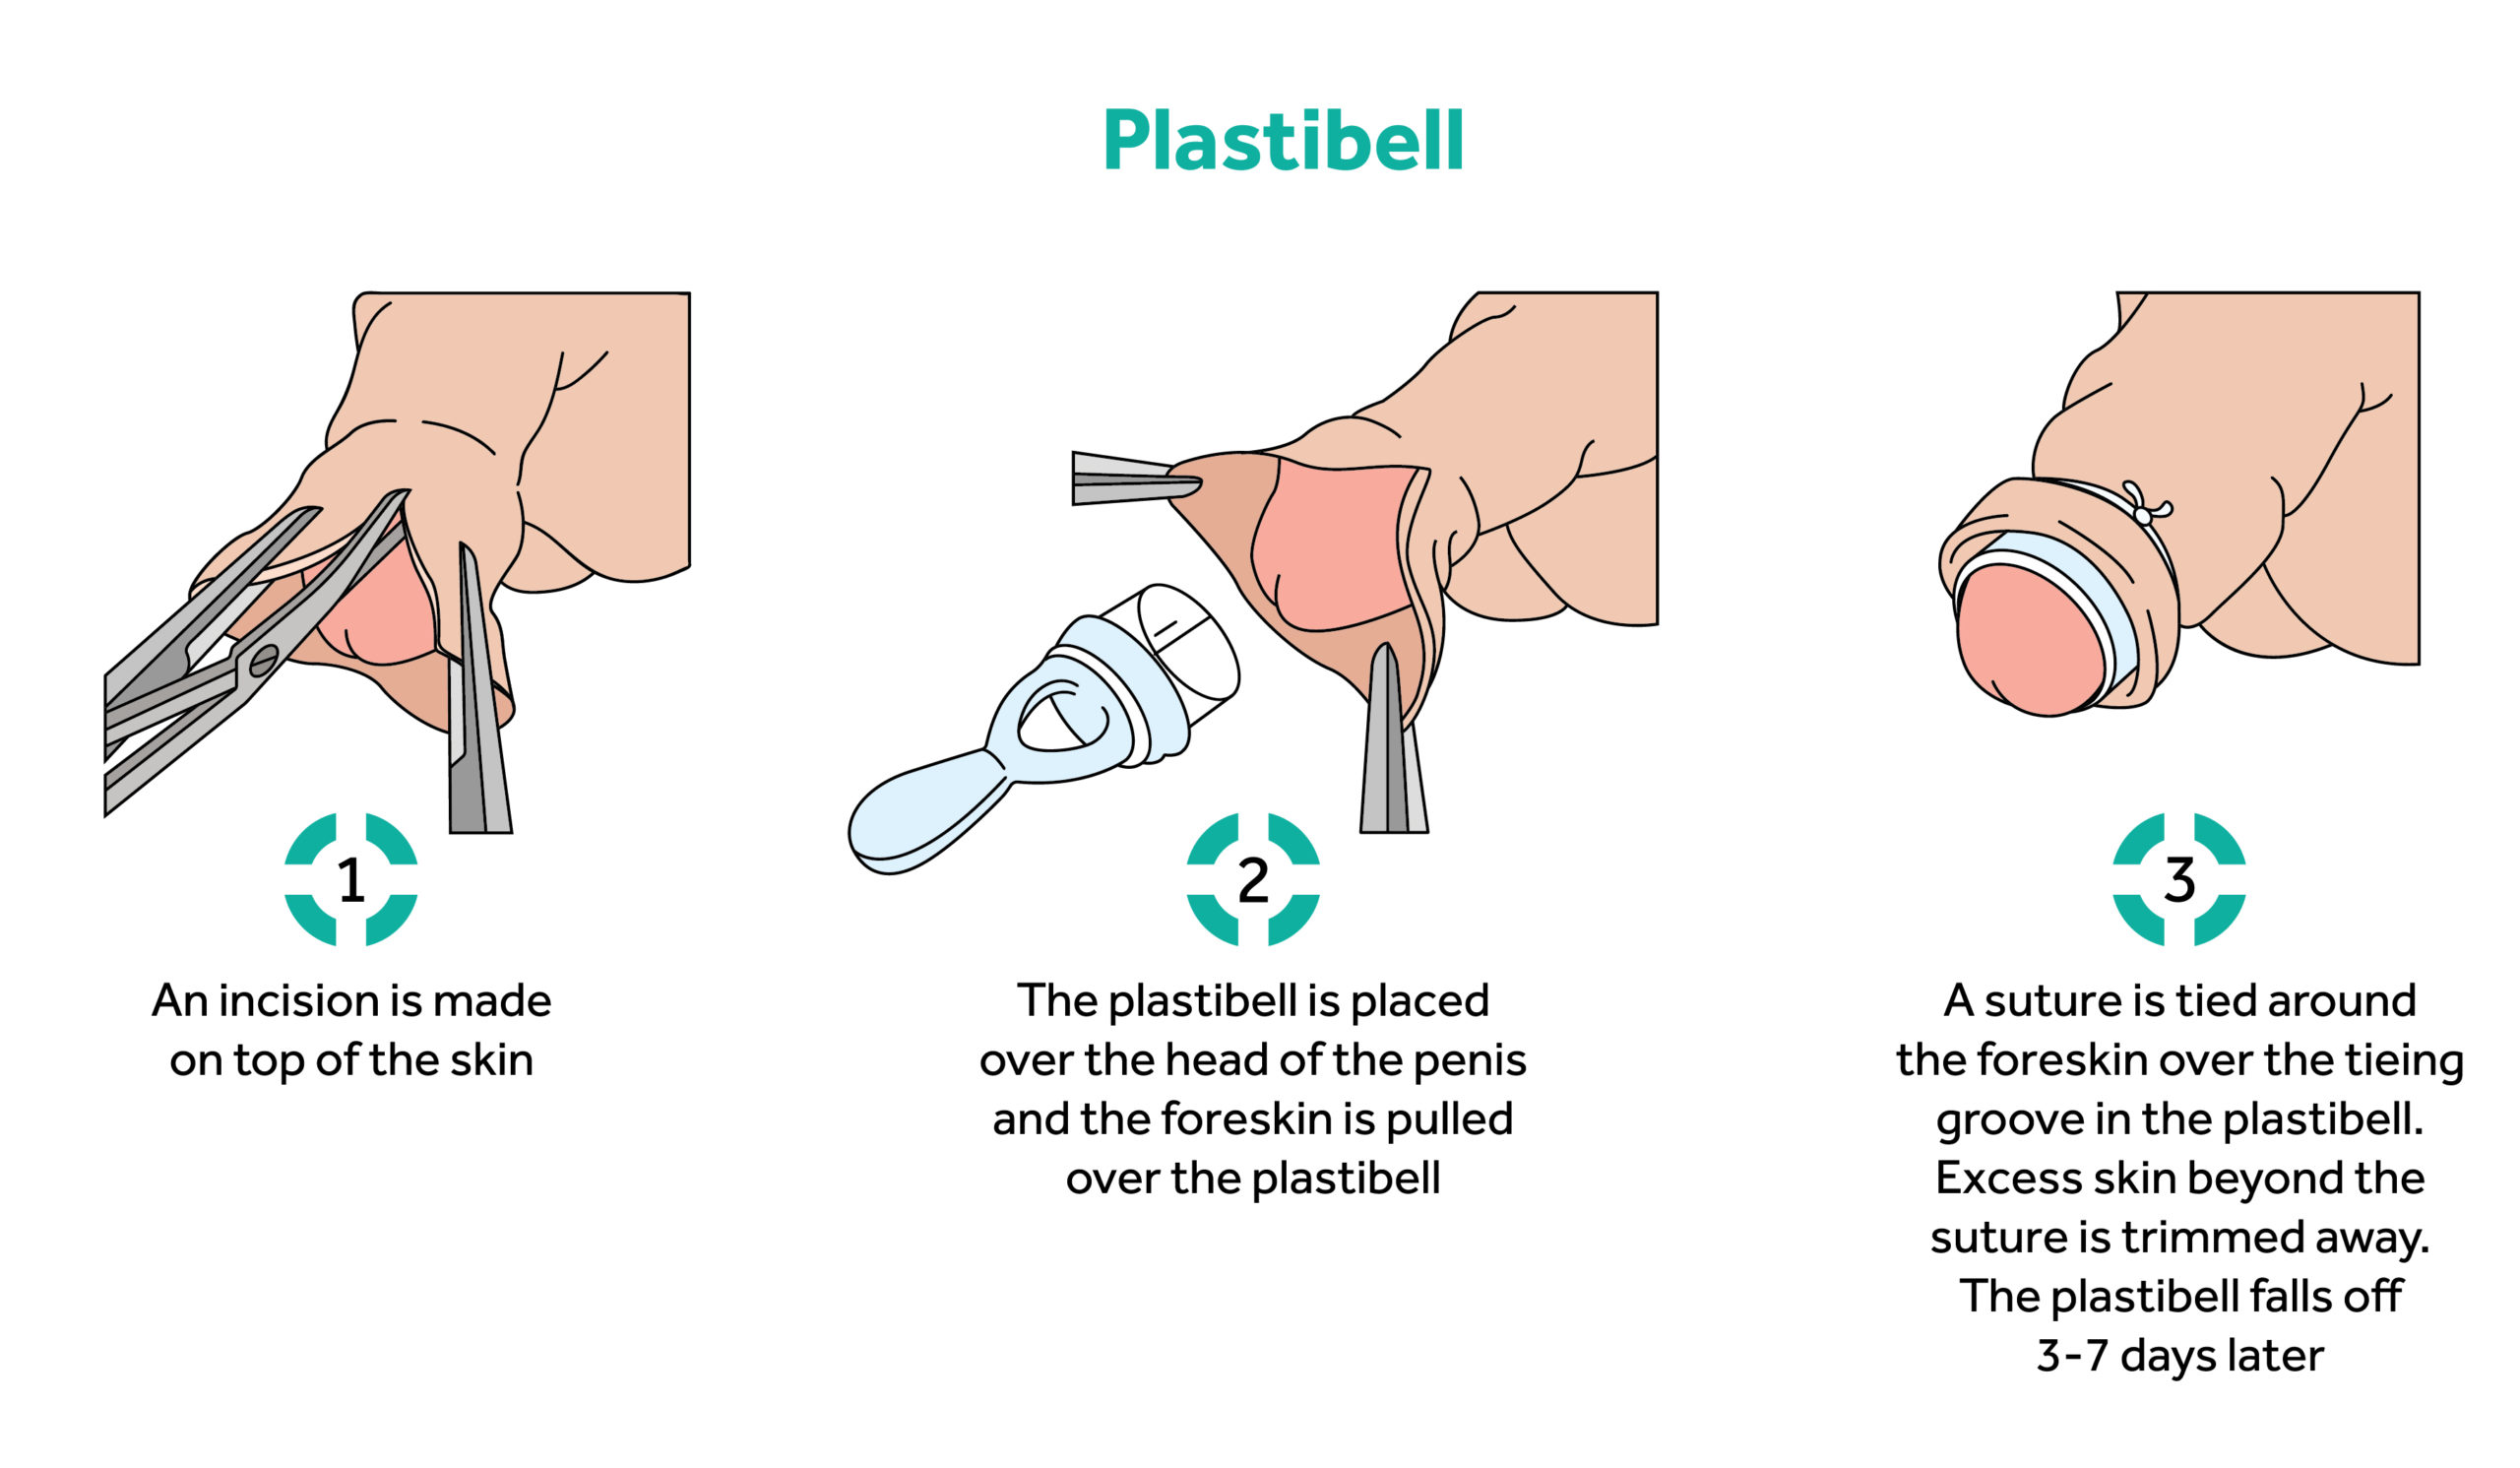 Plastibel instruction sheet